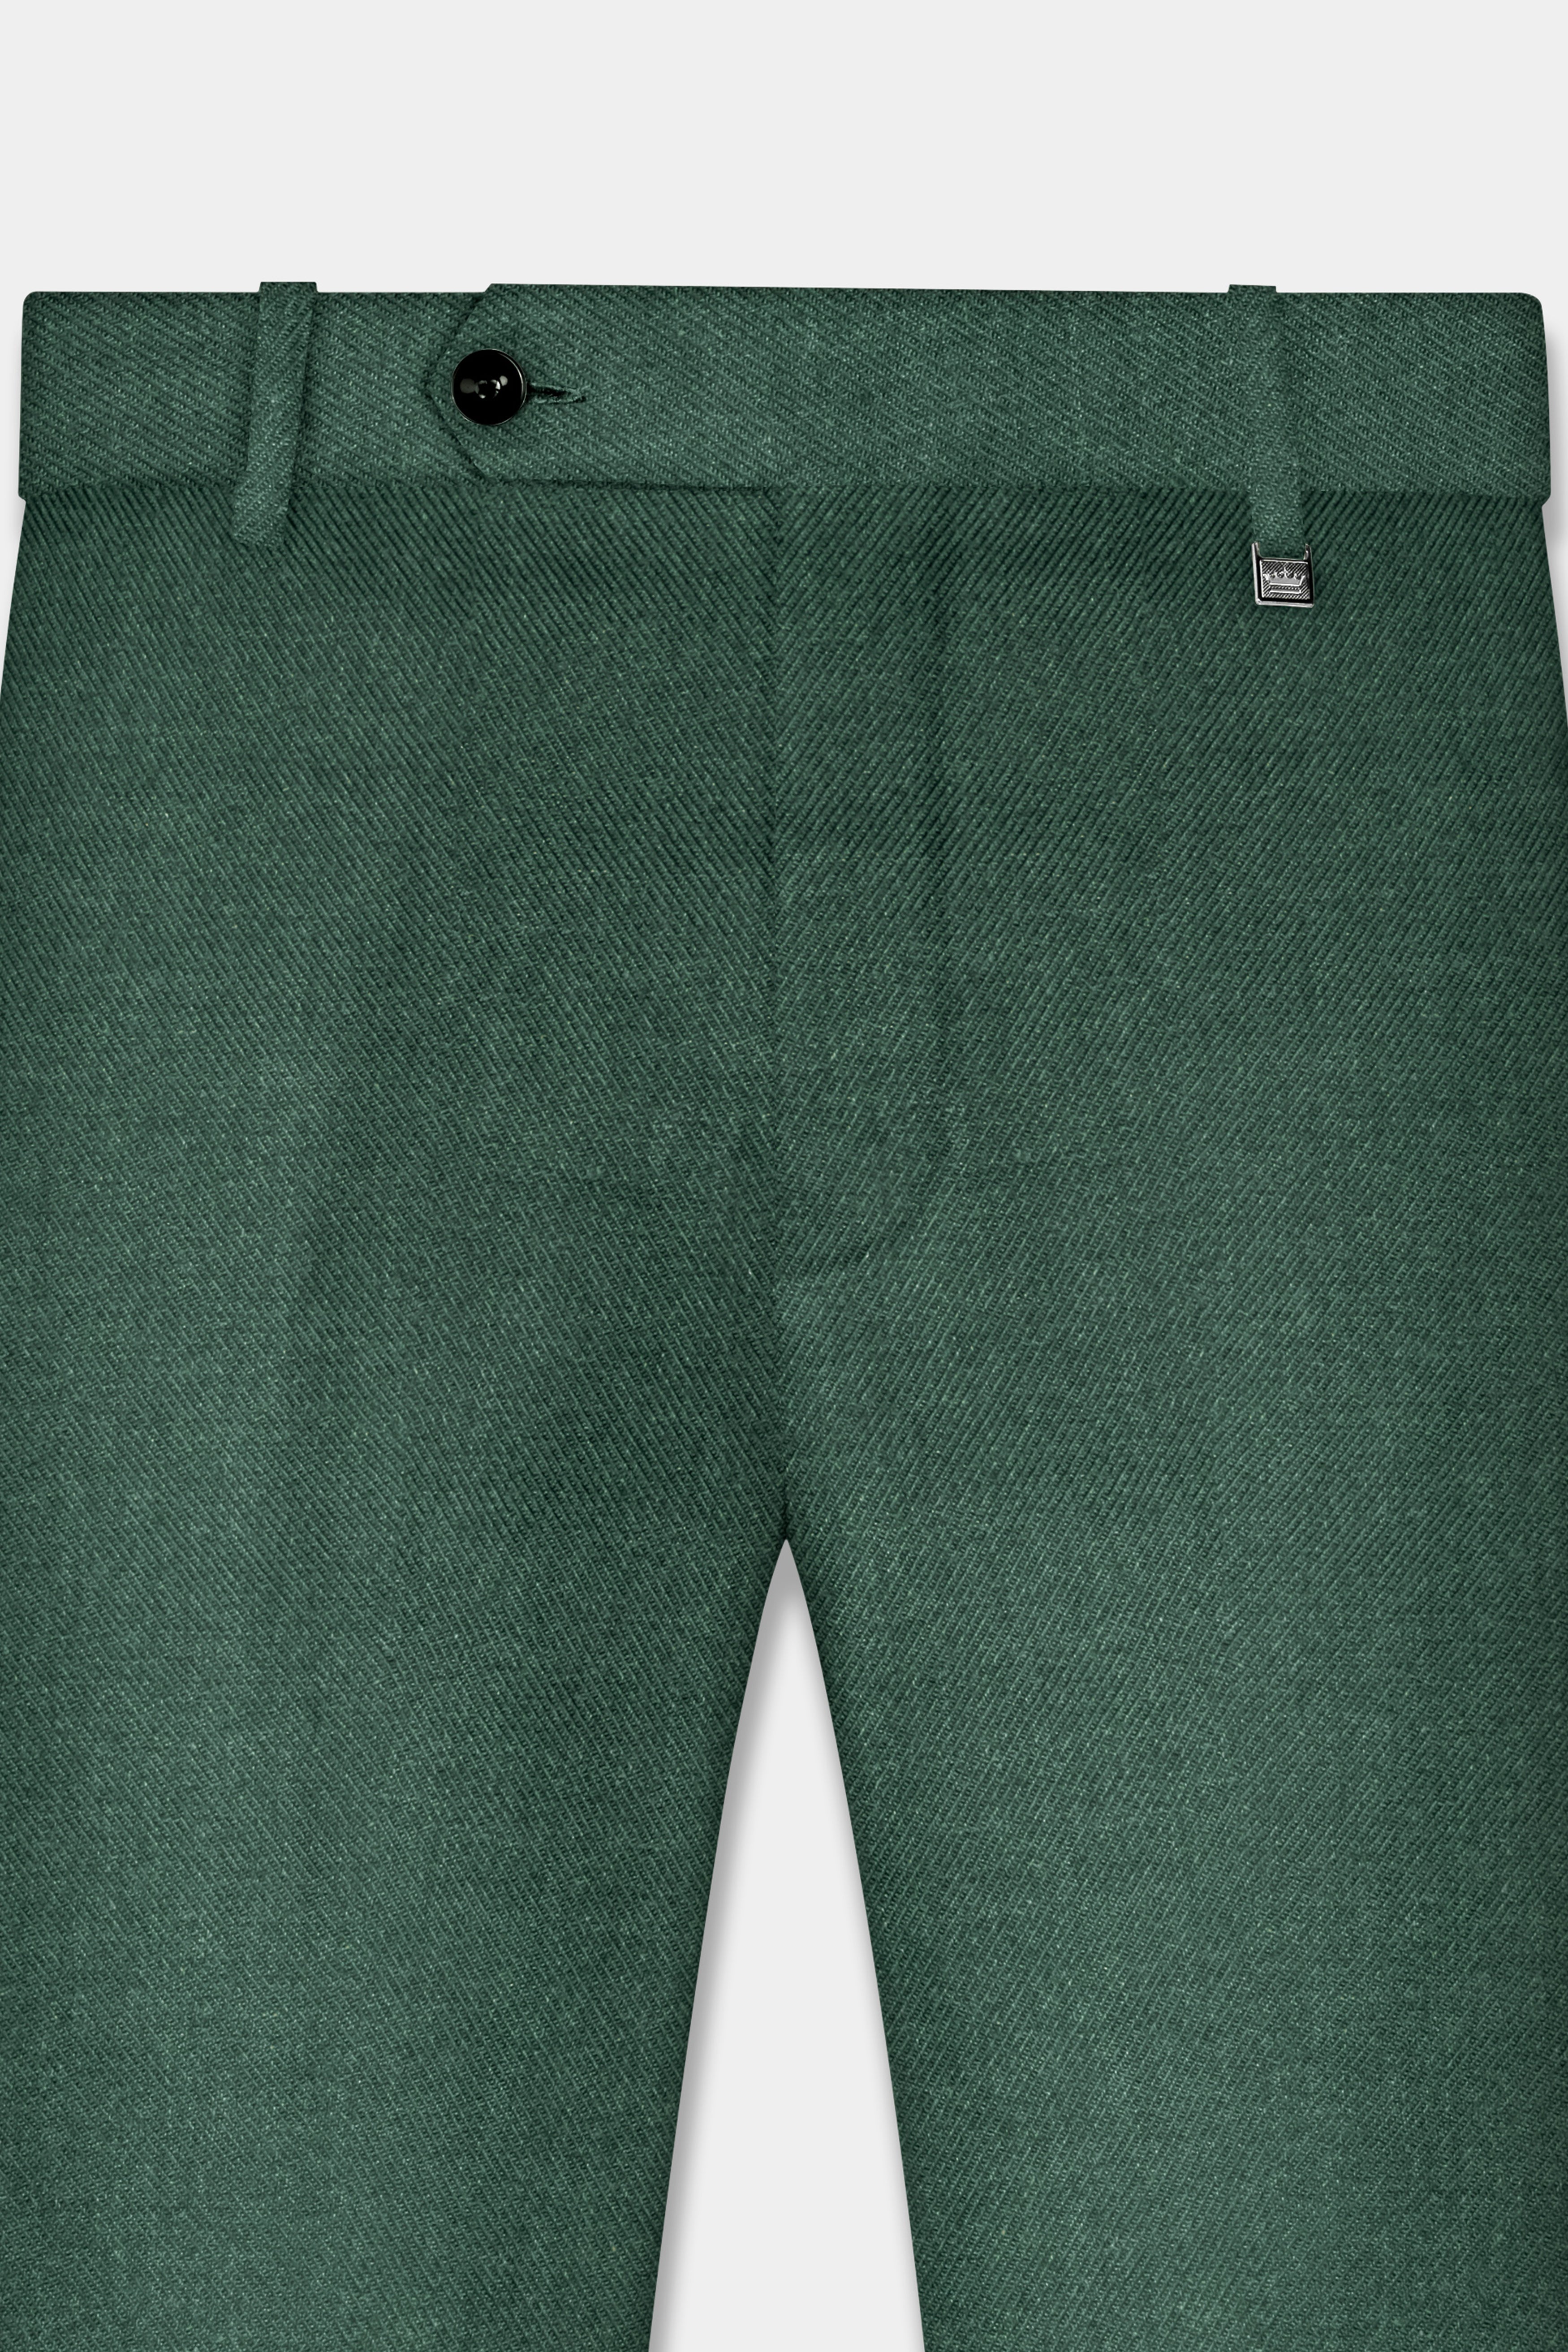 Plantation Green Tweed Pant